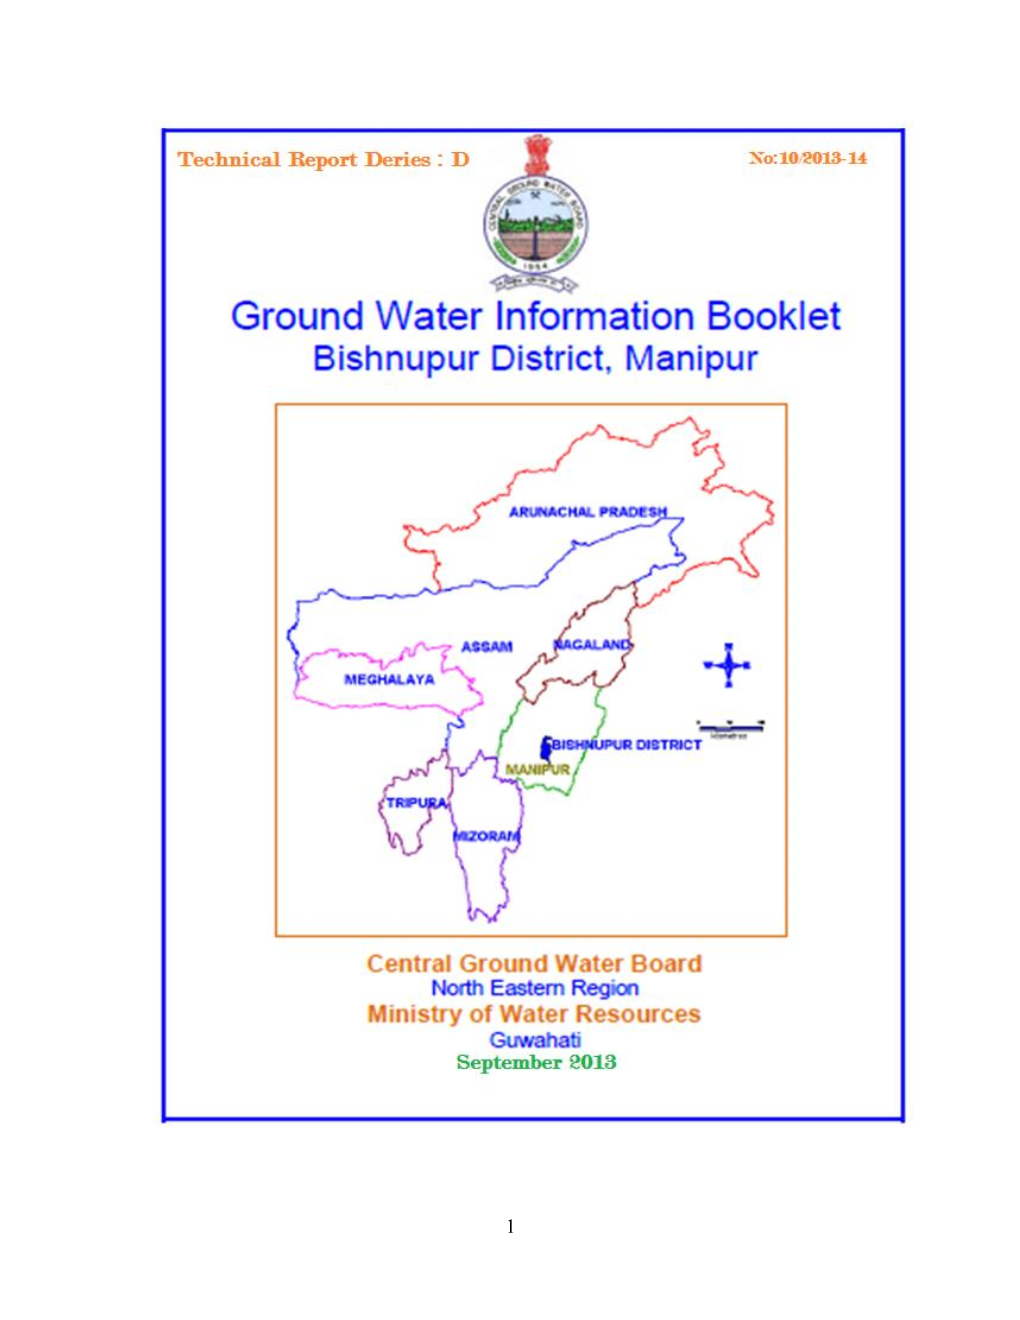 Ground Water Information Booklet, Bishnupur District, Manipur